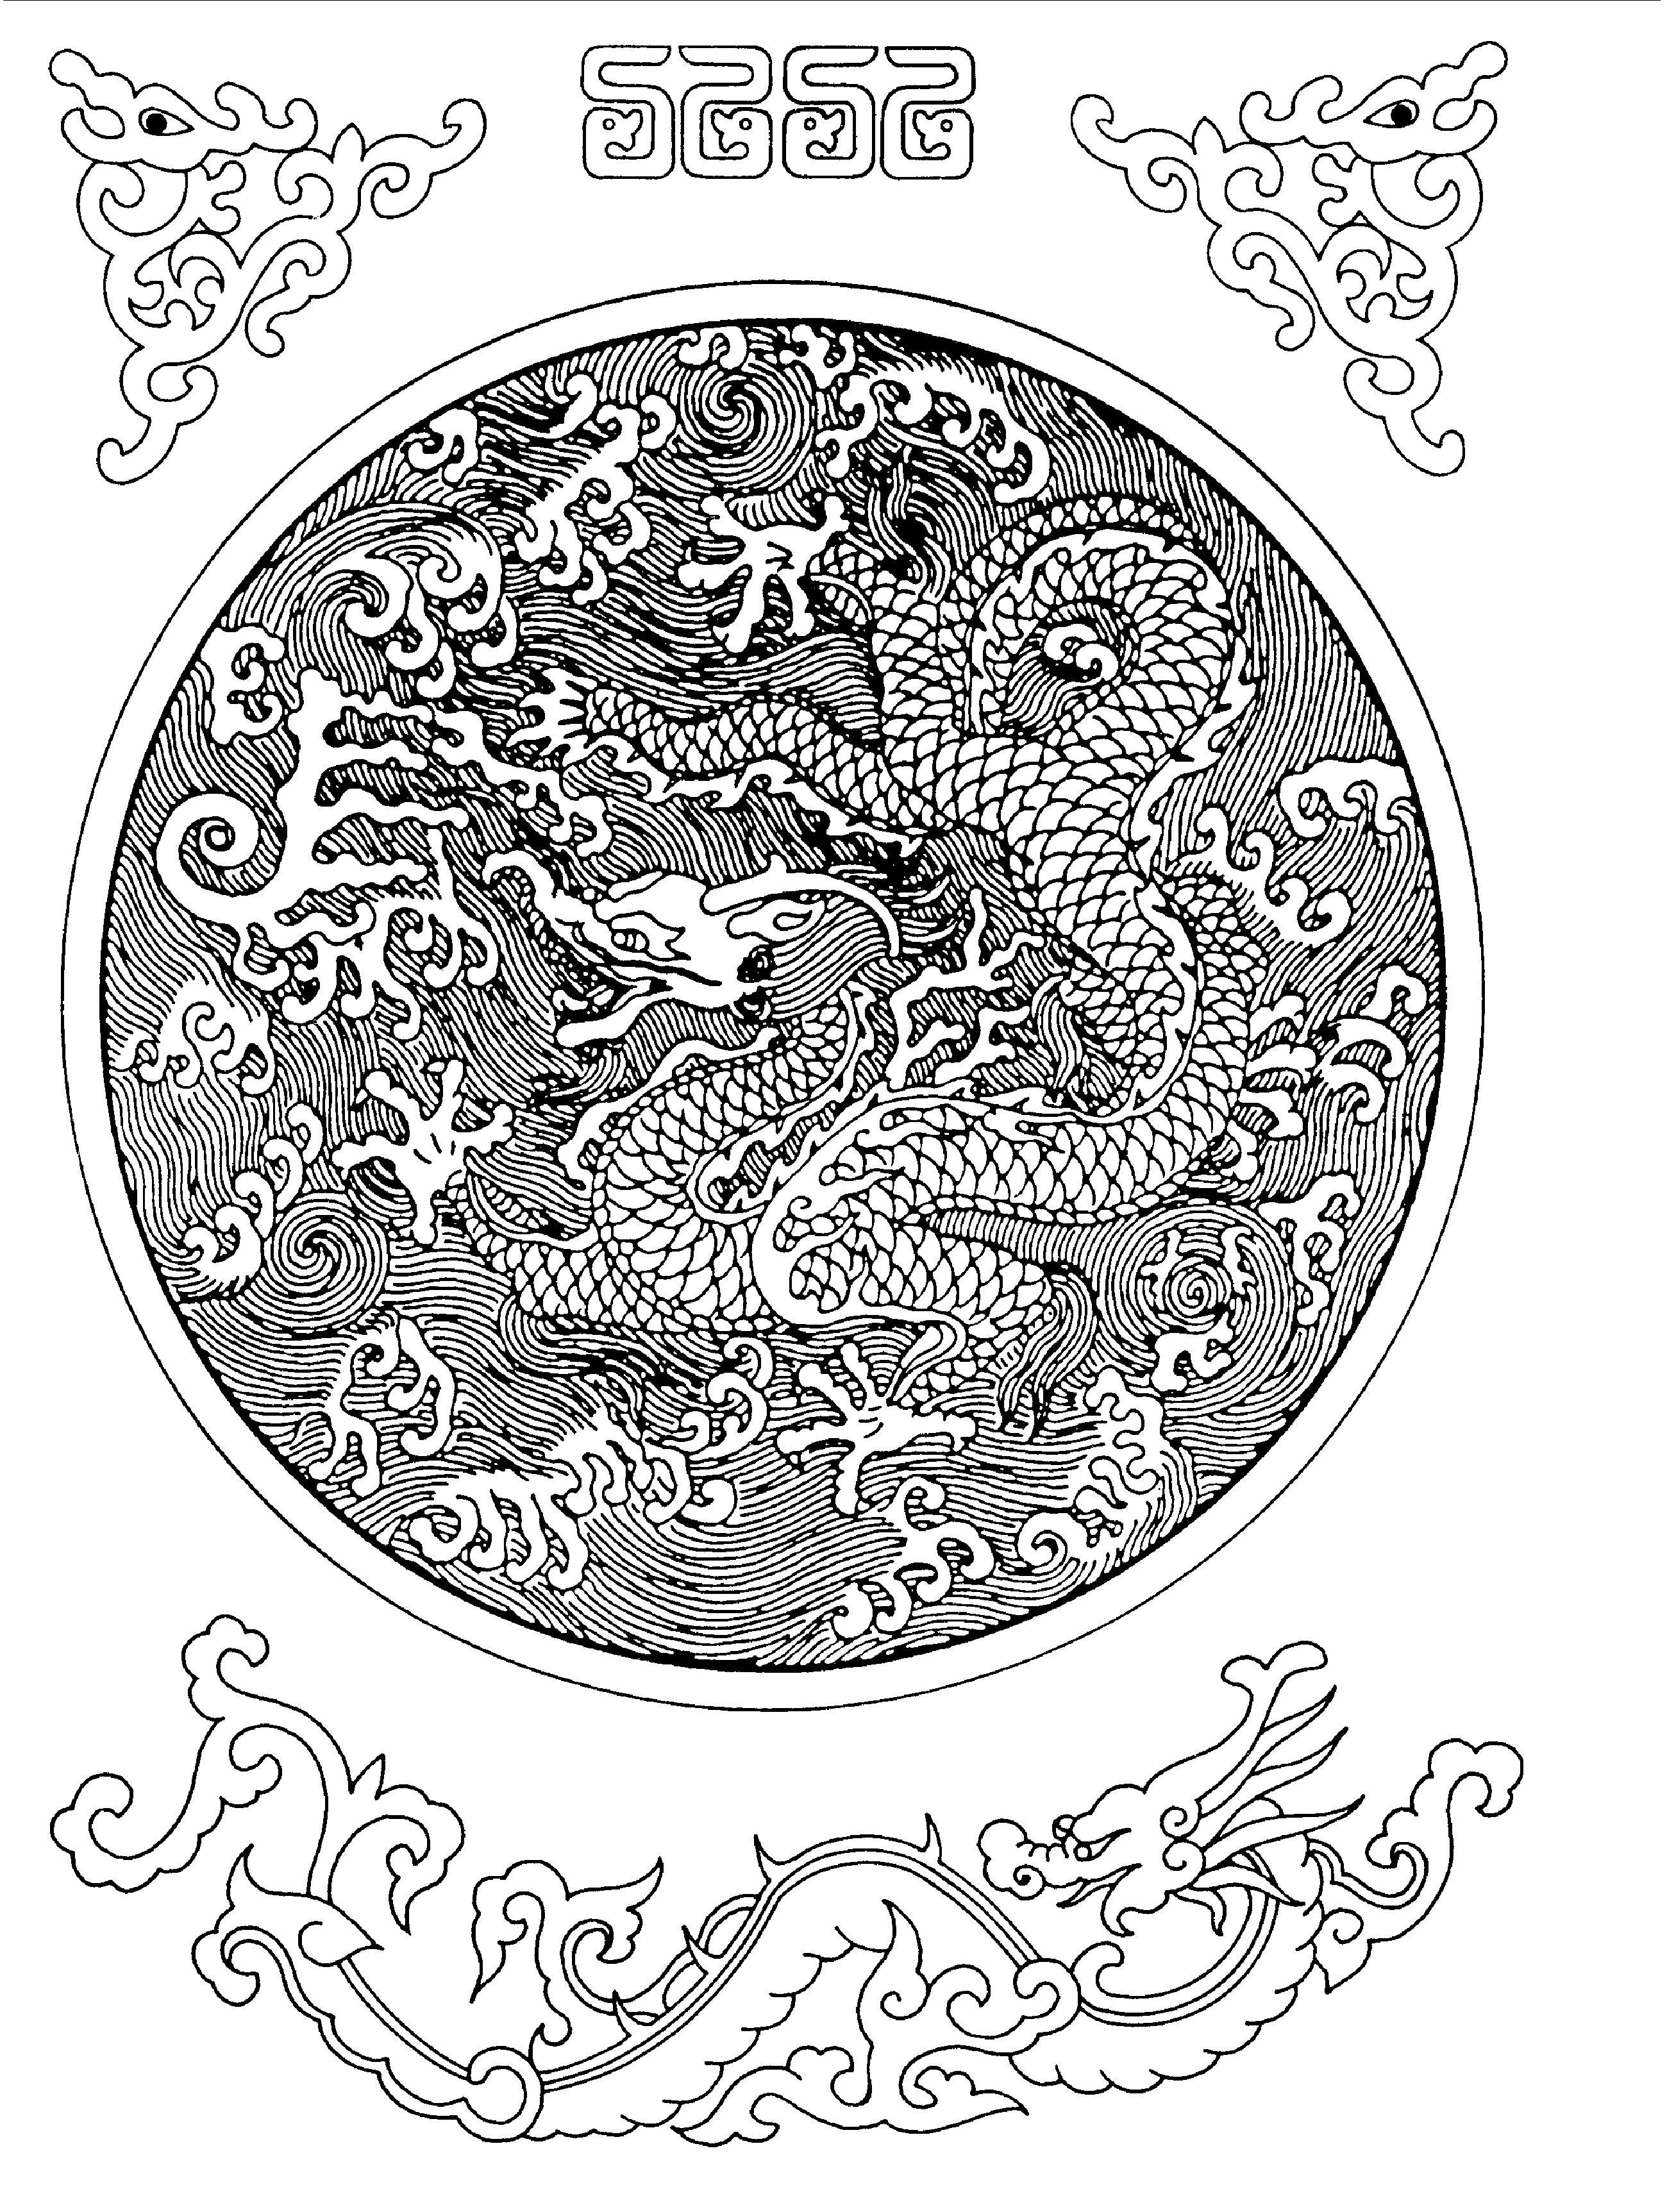 龙凤纹样 136-传统纹样图典-图片